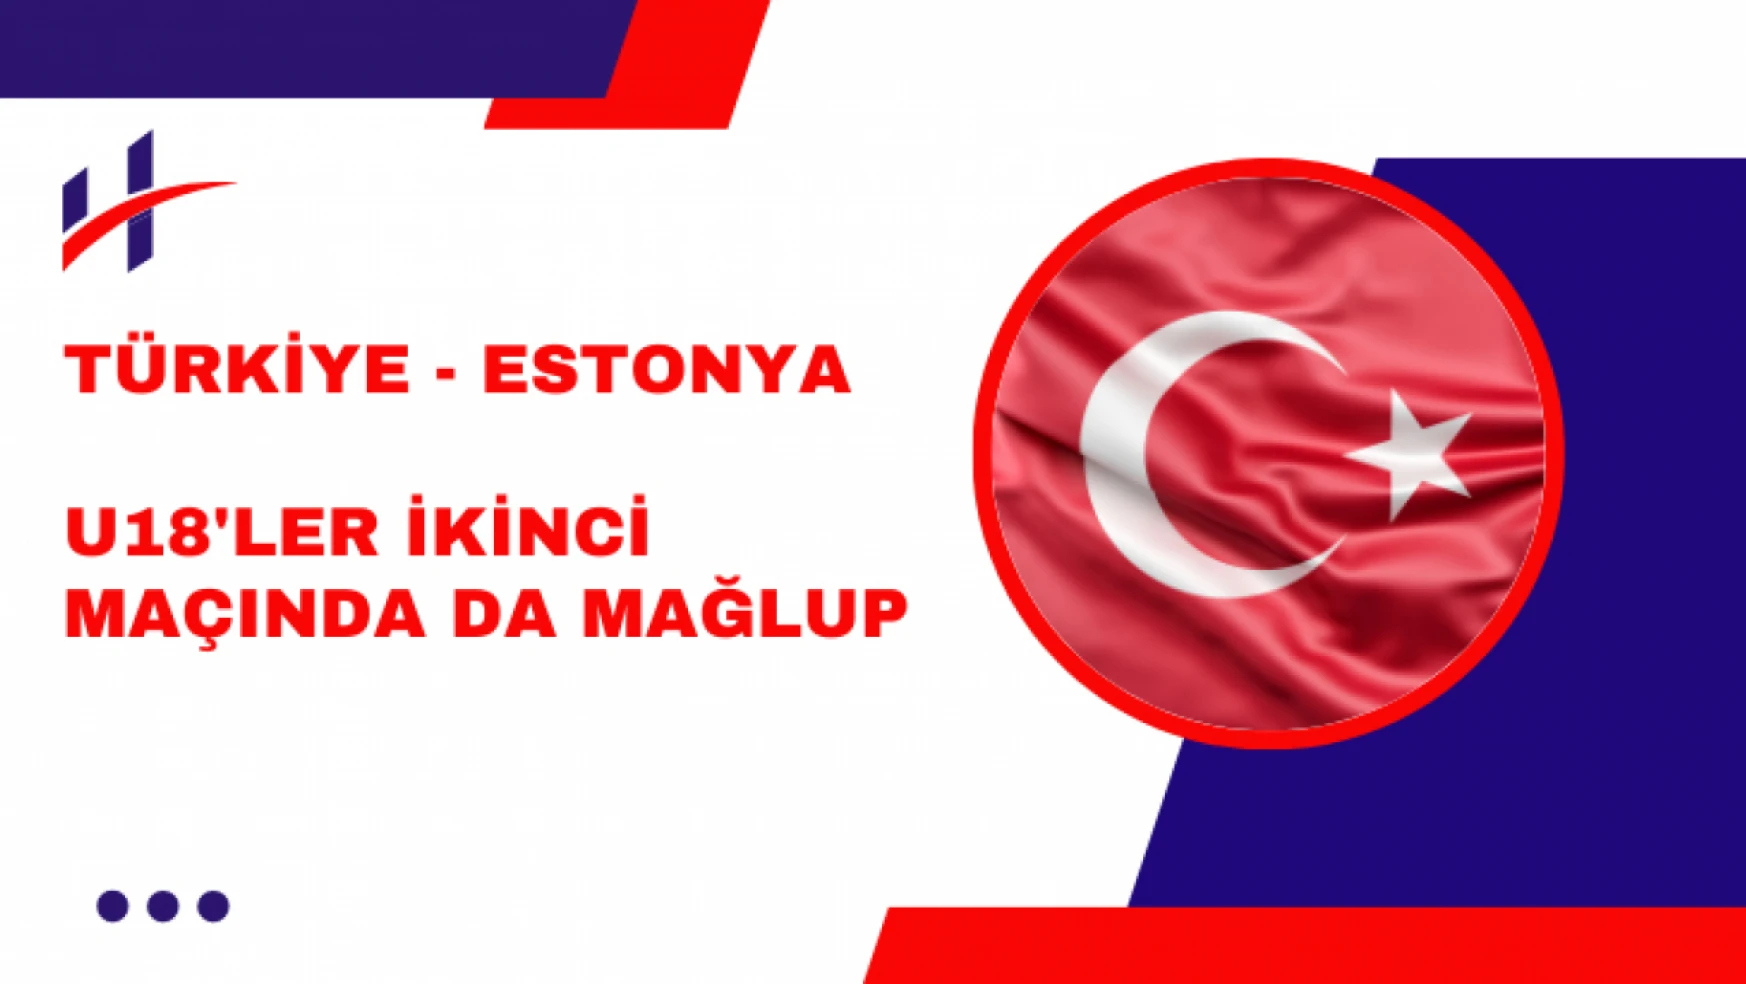 Türkiye - Estonya, U18'ler İkinci Maçında da Mağlup